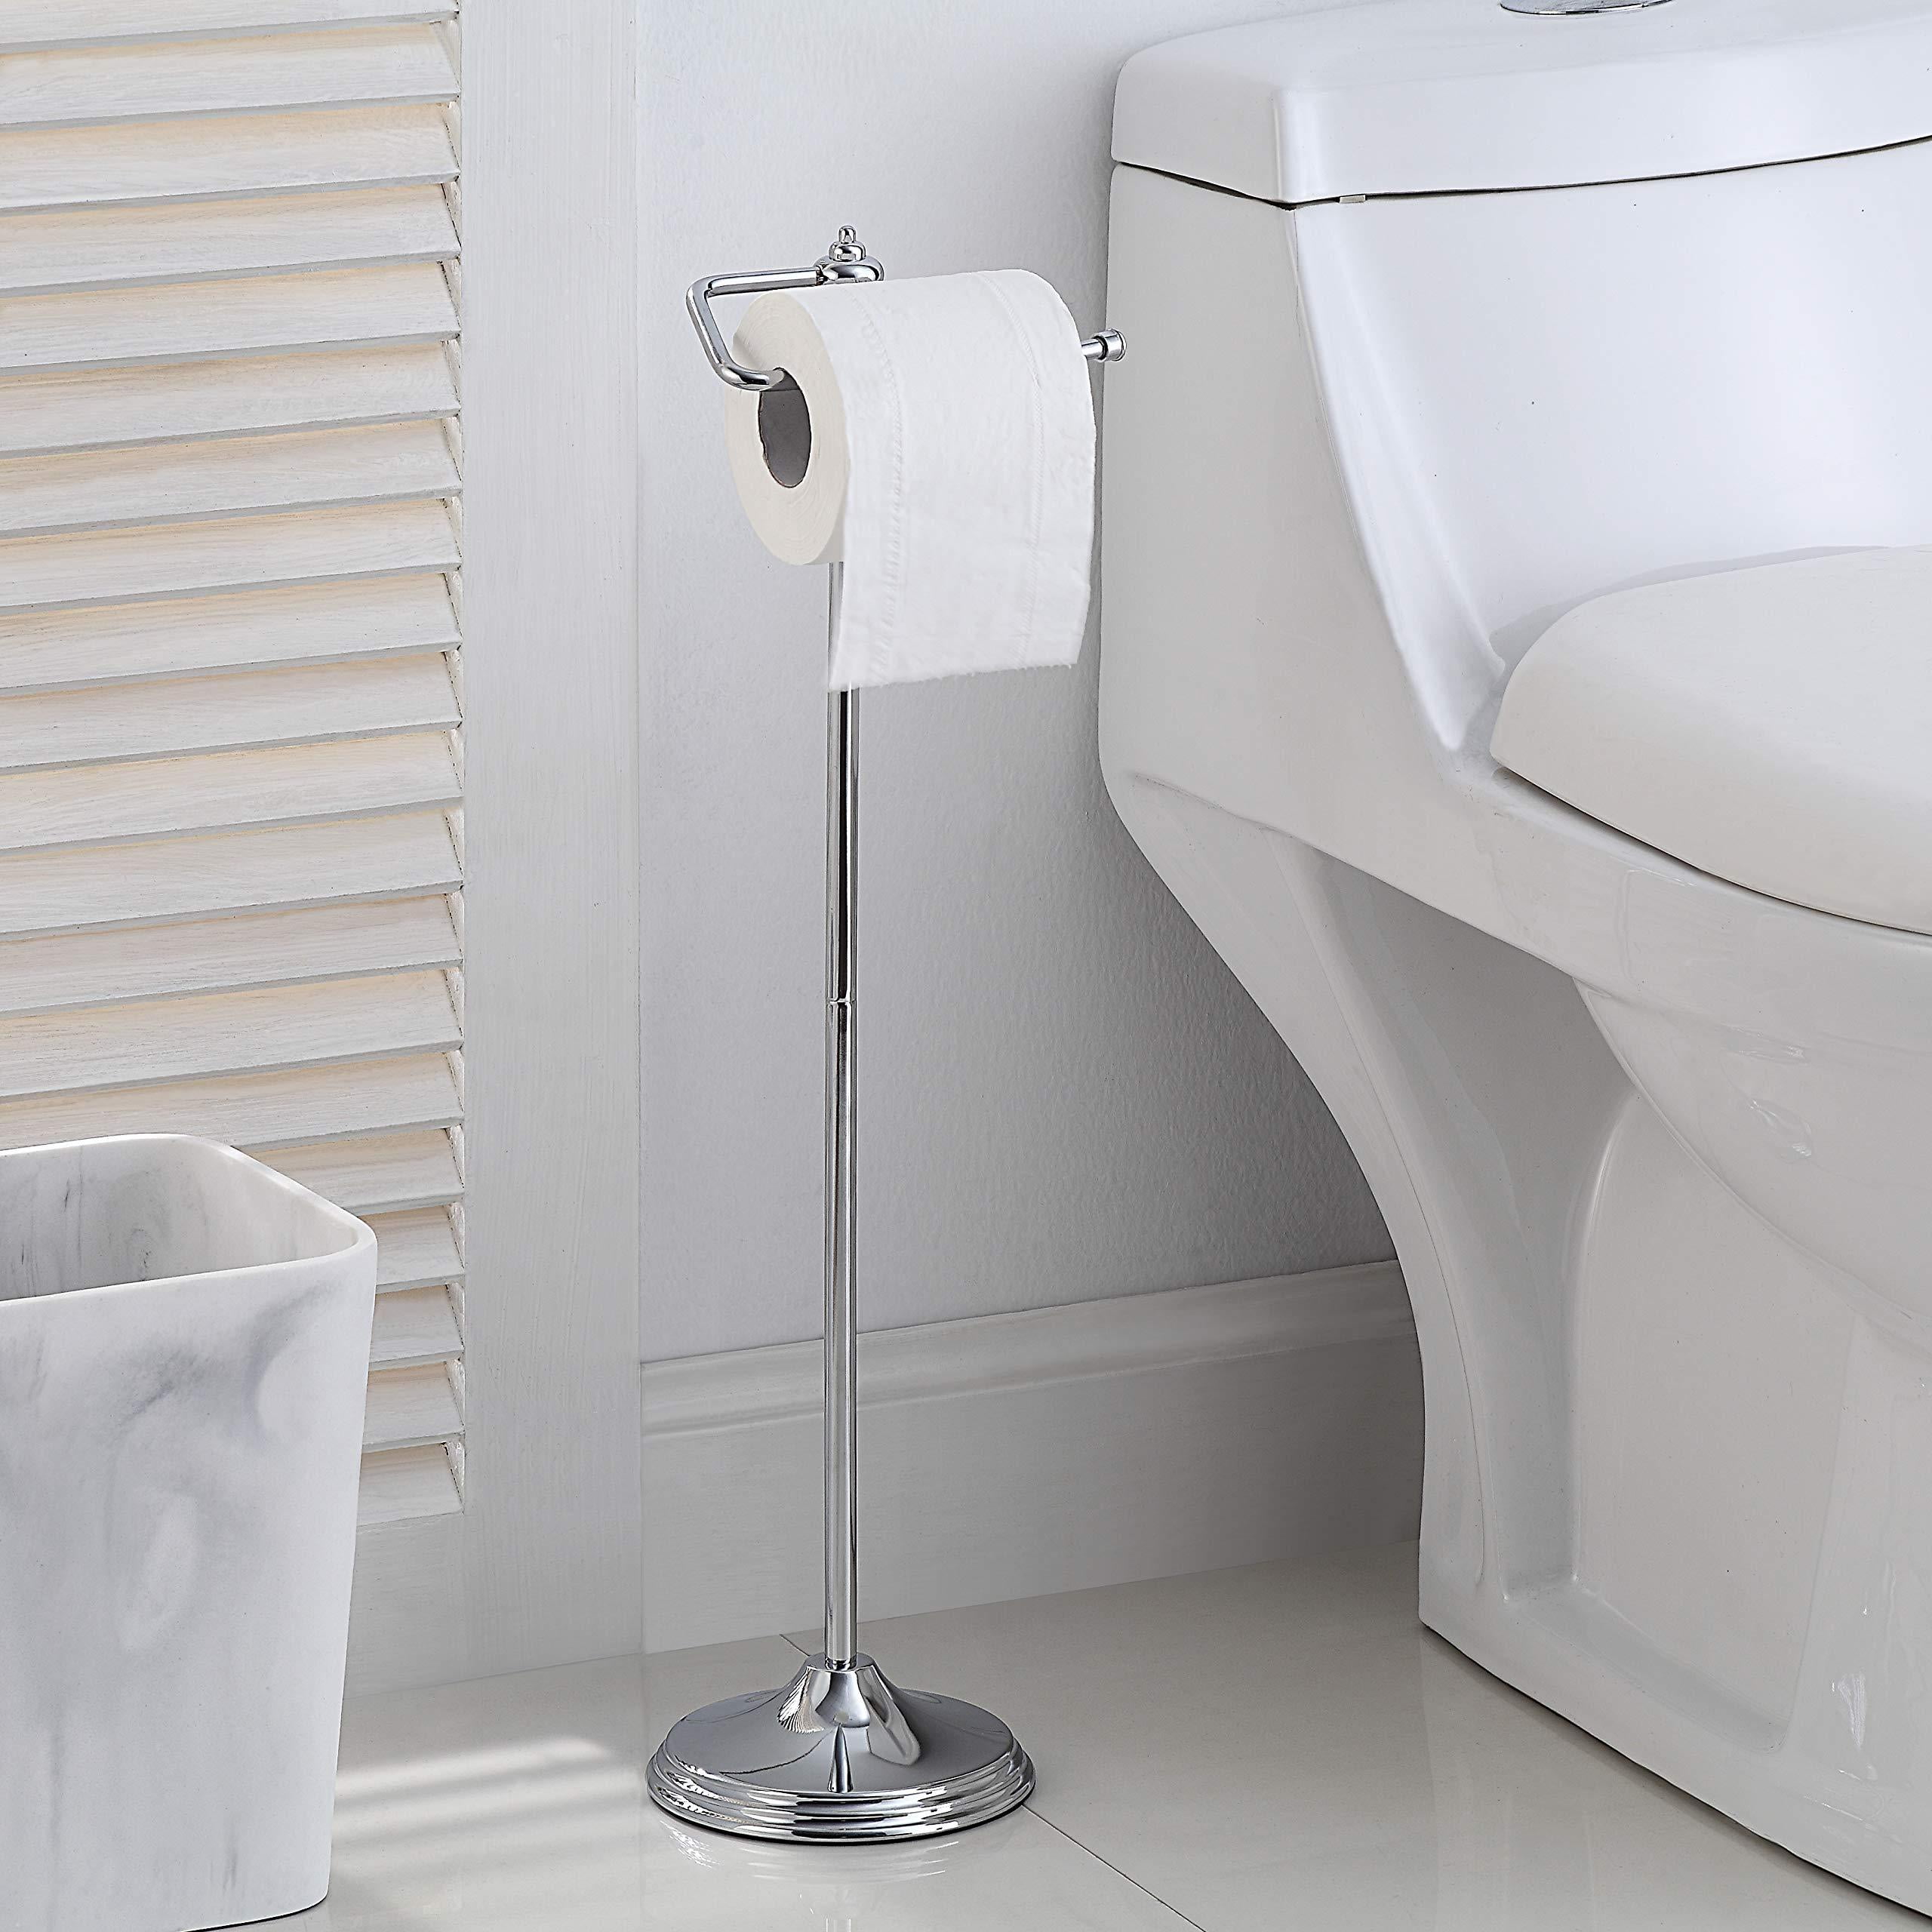 Chrome Free Standing 4 Roll Toilet Tissue Paper Holder Bathroom Dispenser Stand 